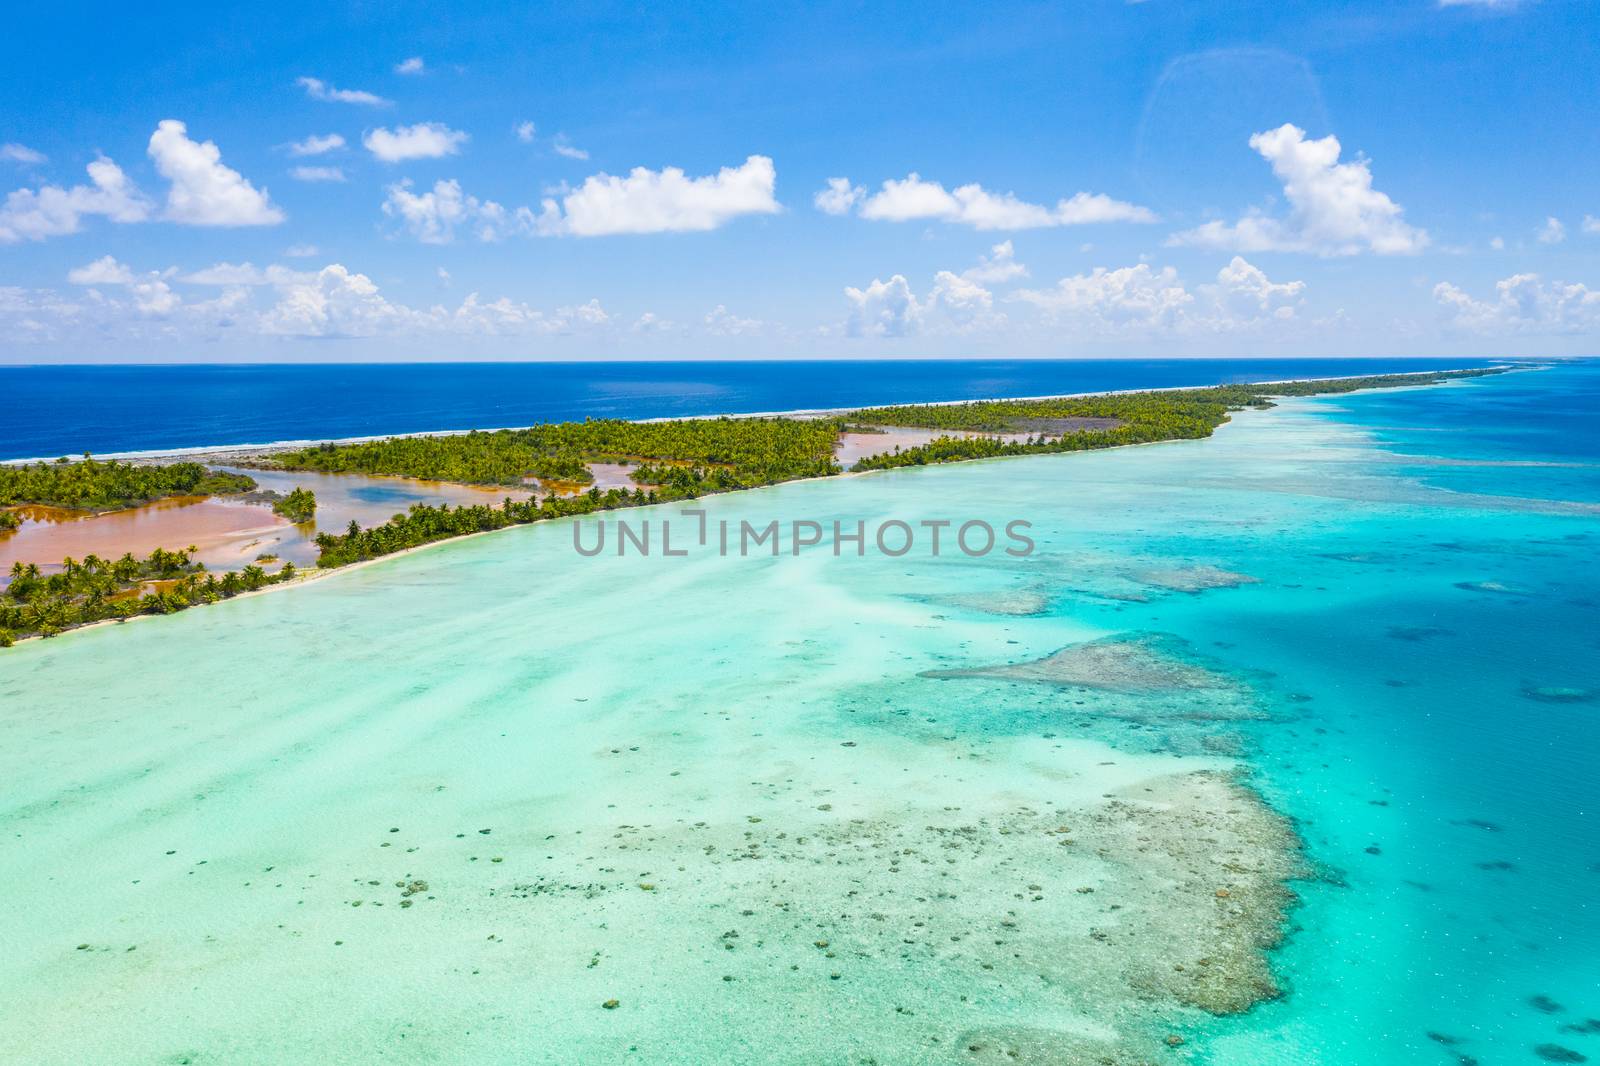 Drone image of French Polynesia Tahiti Fakarava atoll island and Blue Lagoon by Maridav